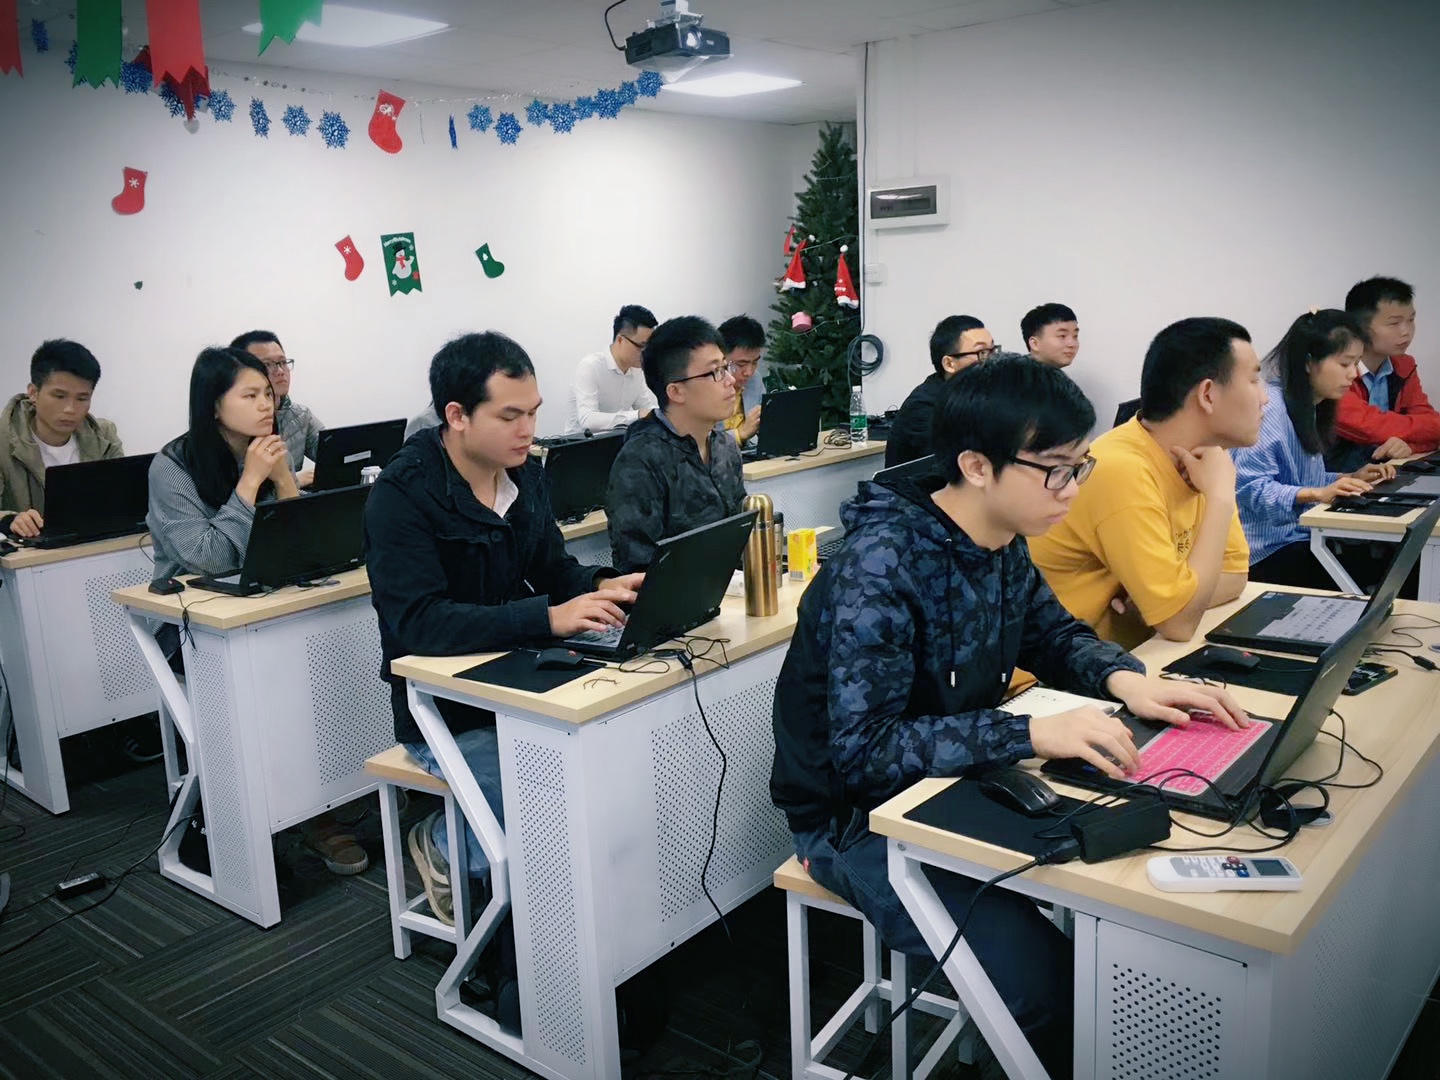 上海jmeter接口和性能测试培训